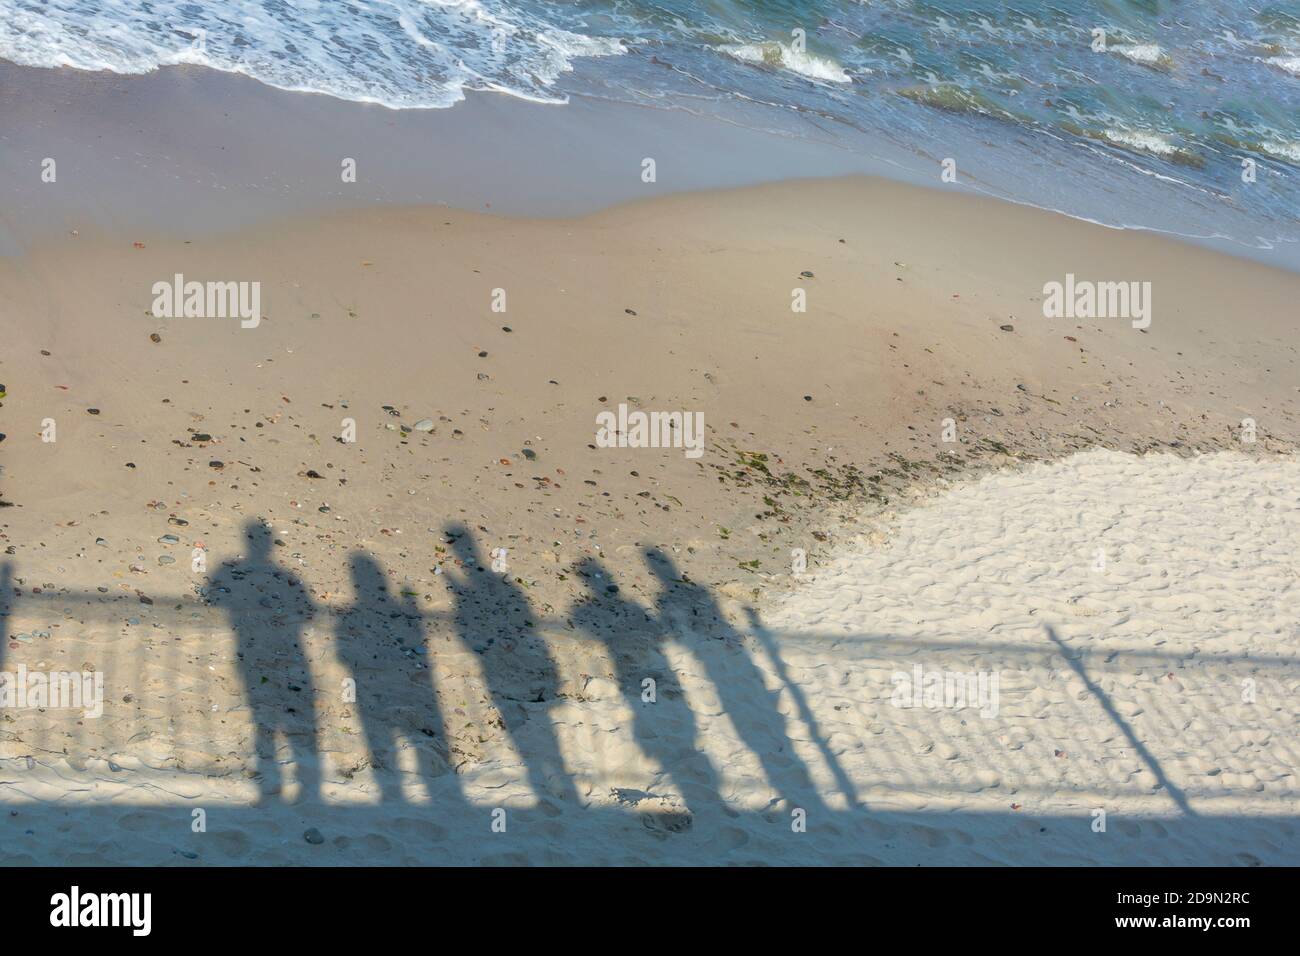 Sombras de grupo de personas en la costa. Concepto de recuerdo, pandemia, salida a otra realidad. Foto de stock